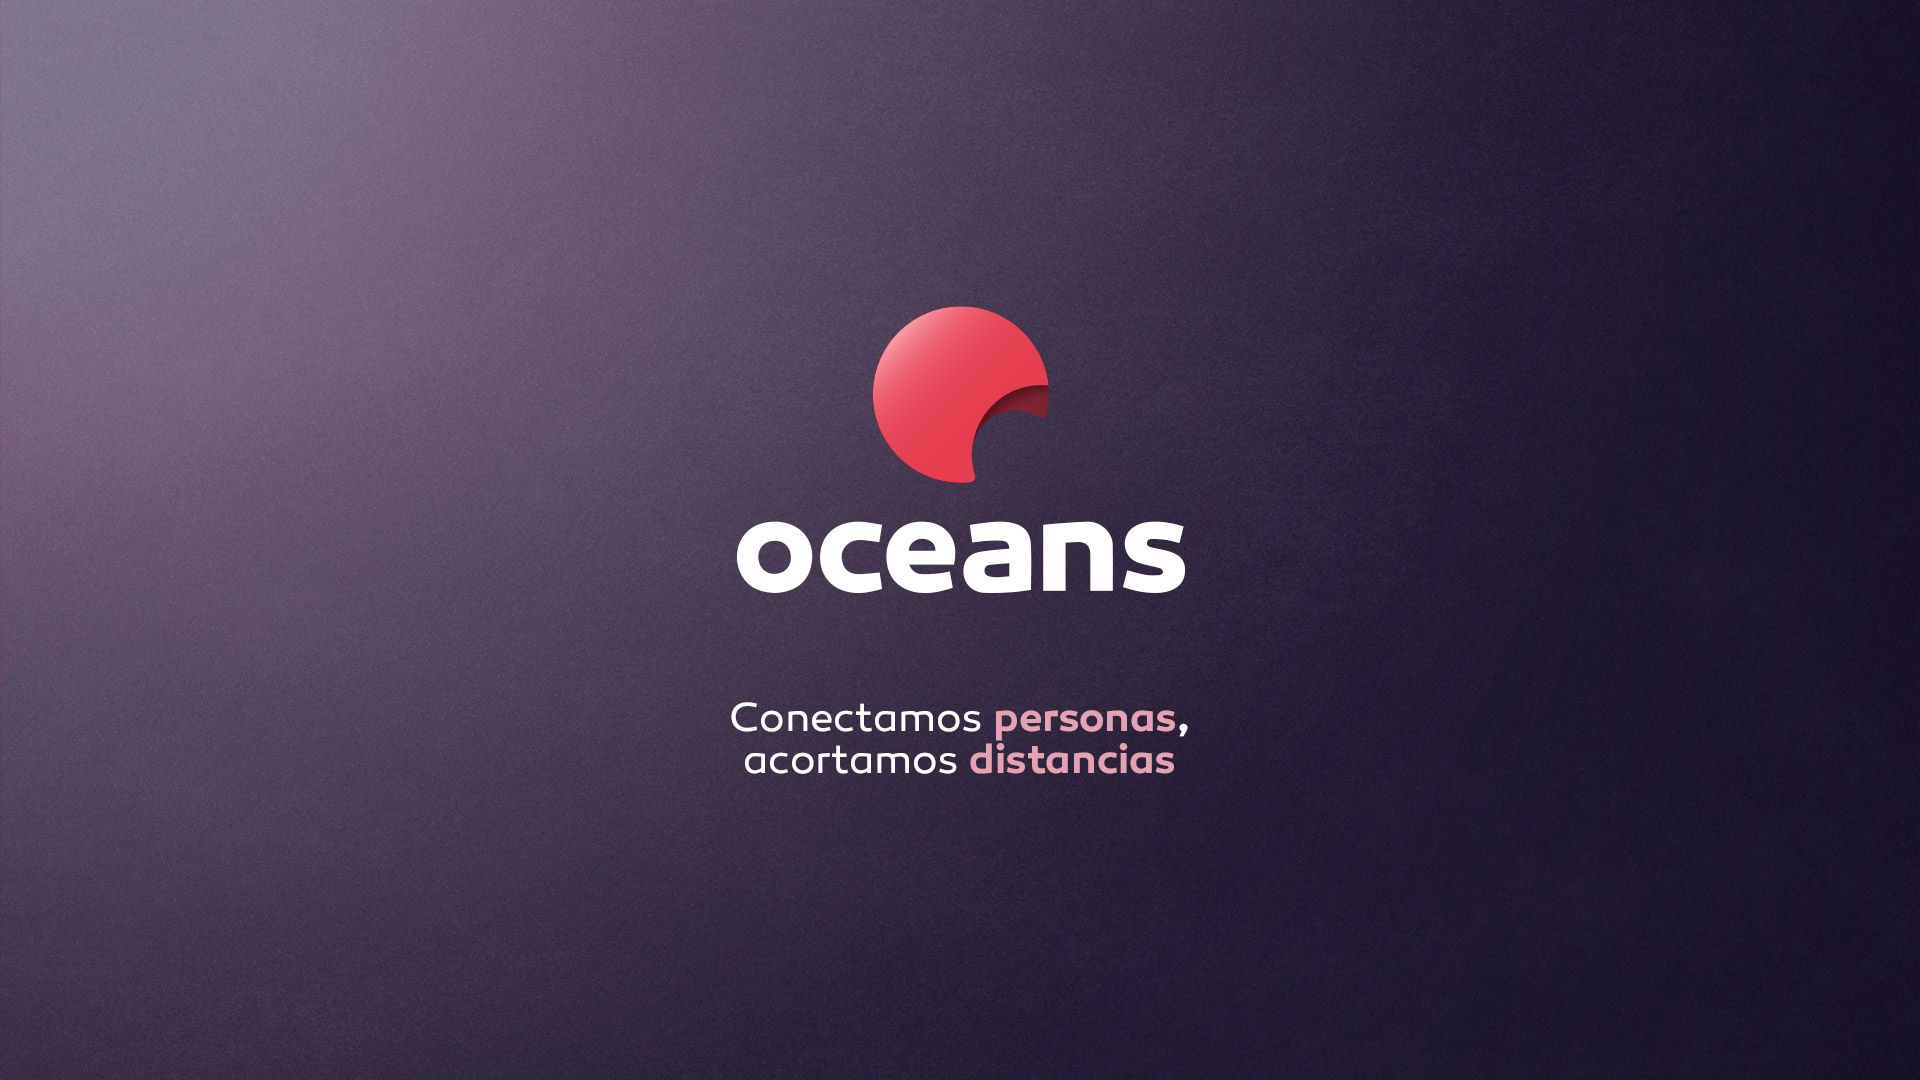 La teleco gallega Oceans renueva su imagen